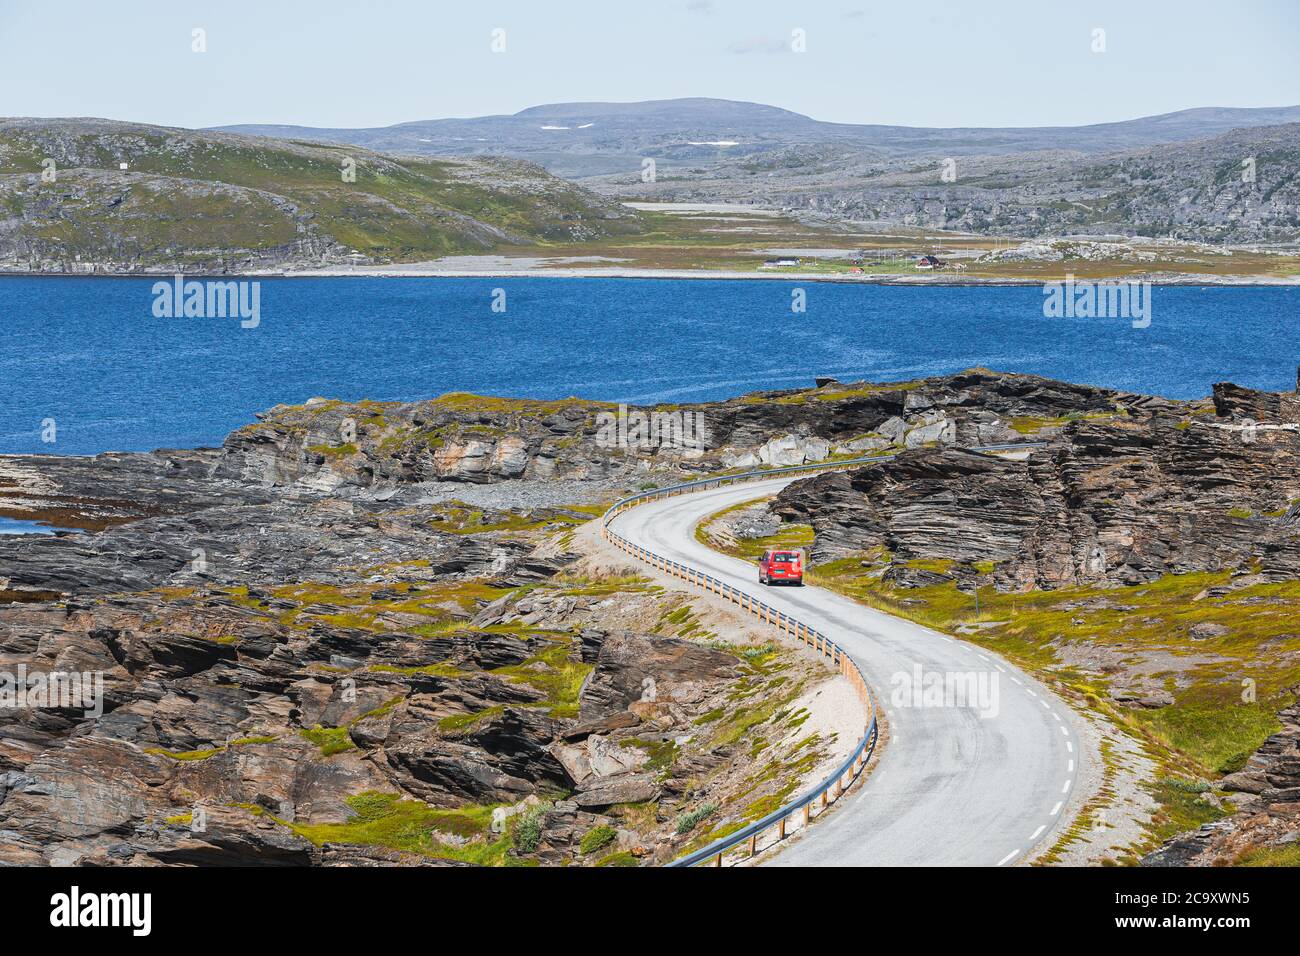 Un camion de livraison de colis rouge sur une route sinueuse dans le nord de la Norvège en été Banque D'Images